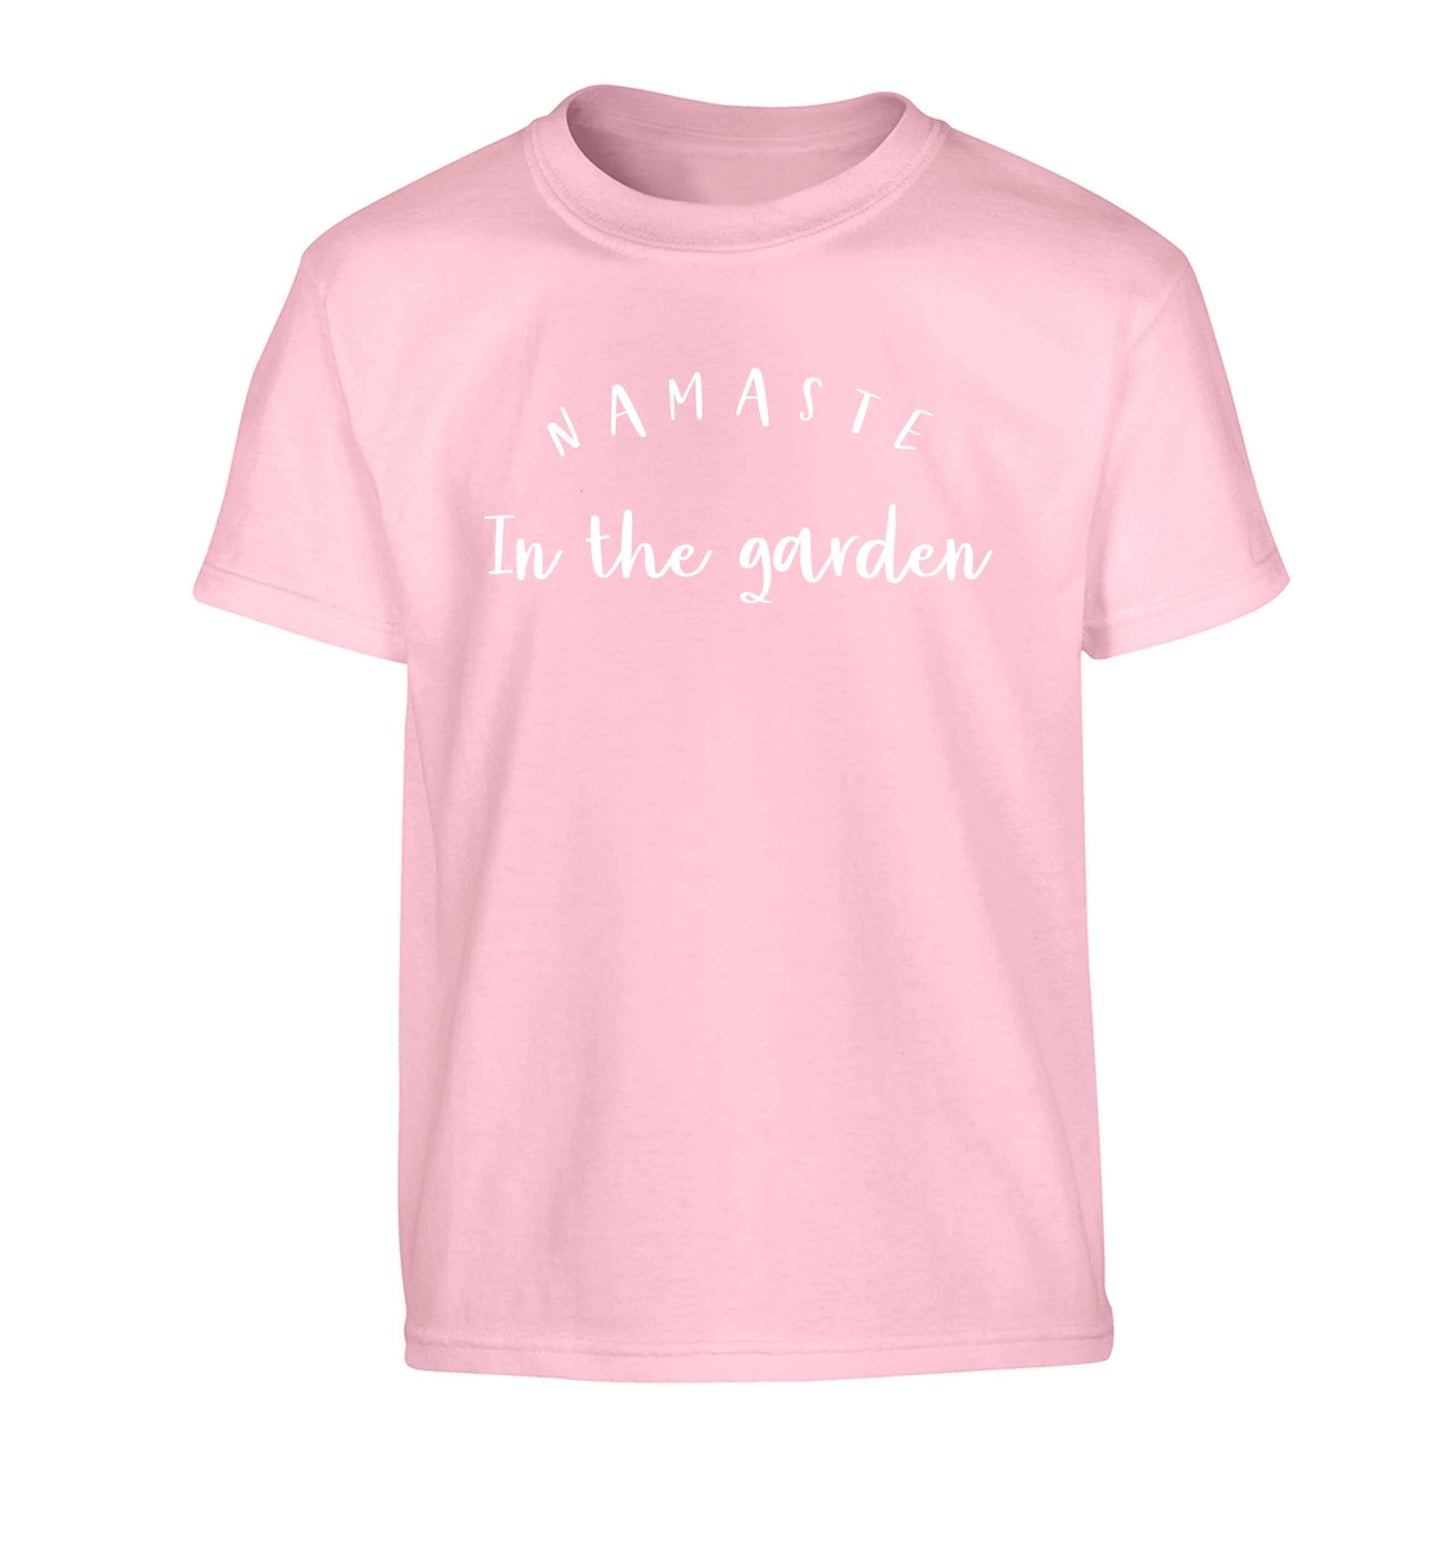 Namaste in the garden Children's light pink Tshirt 12-13 Years